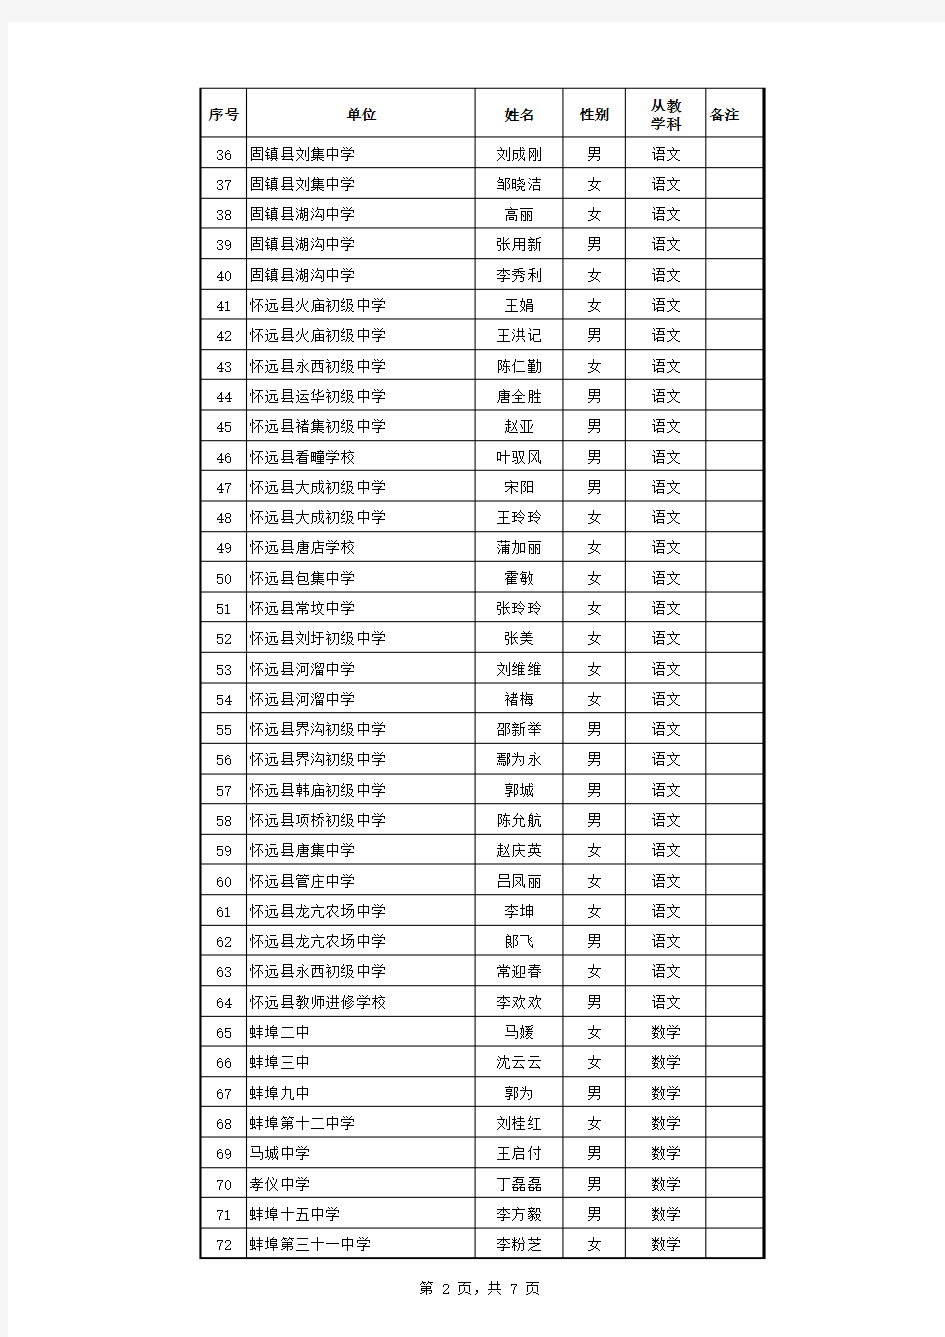 蚌埠市2014年中学一级、小学高级教师职称评审公示人员名单